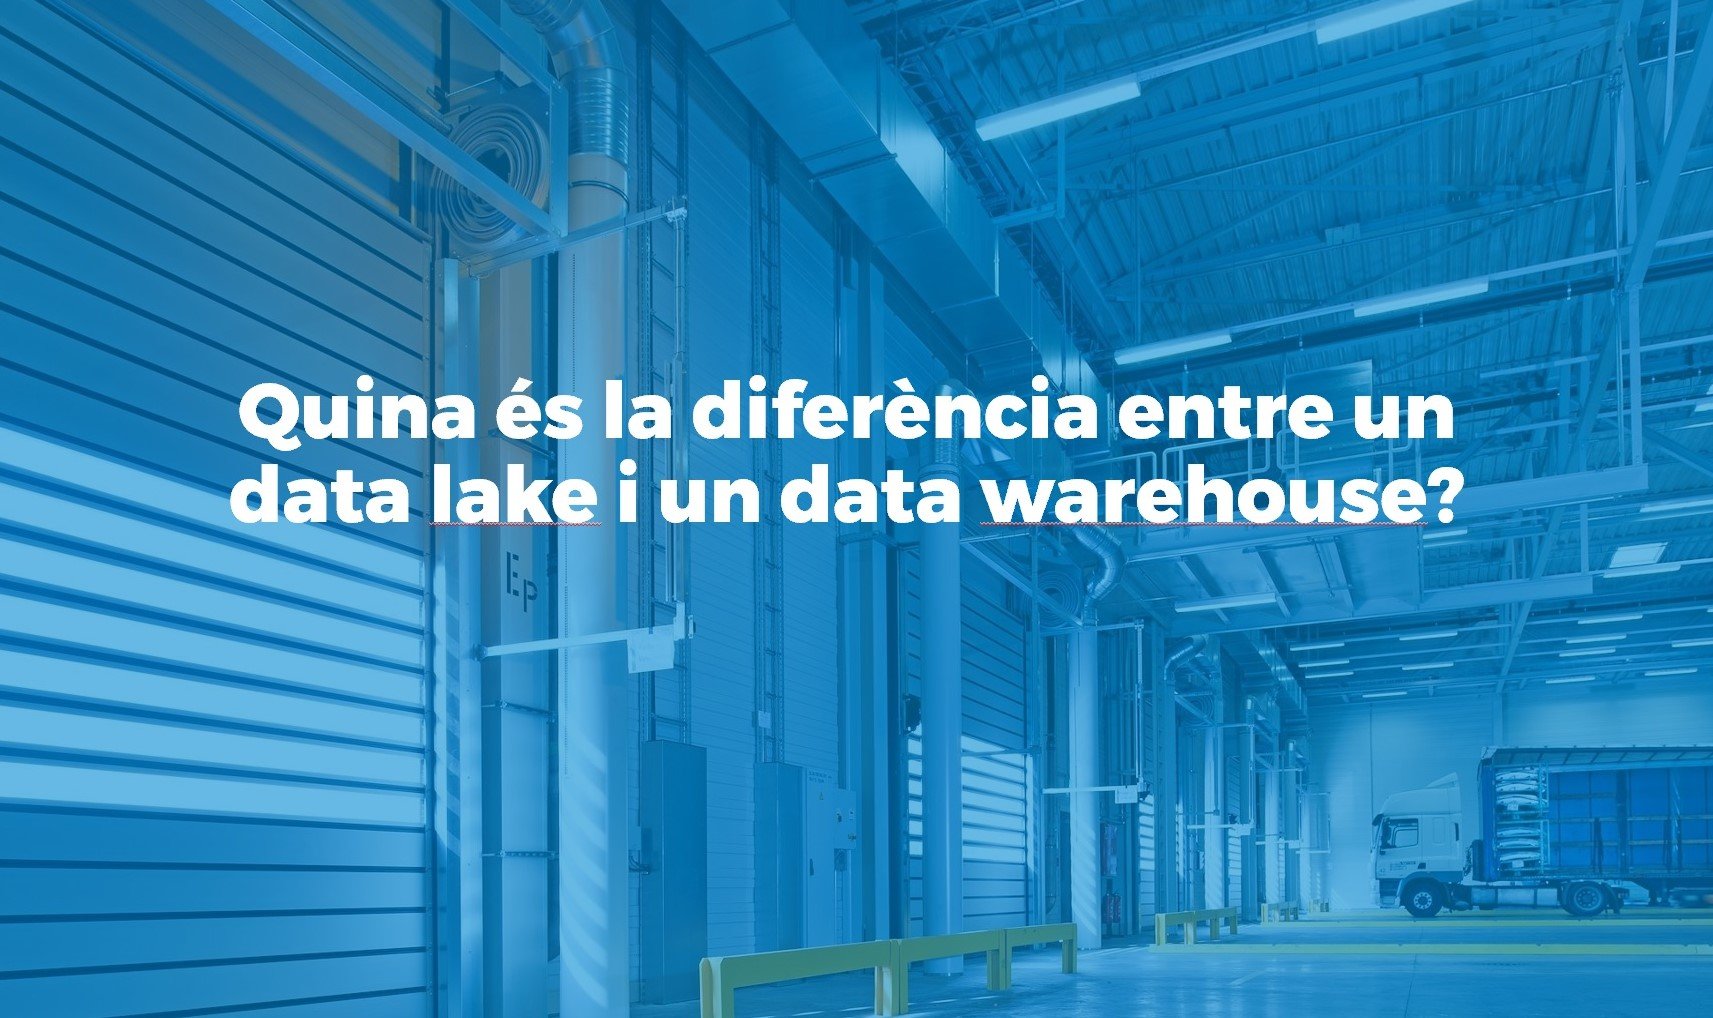 Quina és la diferencia entre un data warehouse i un data lake